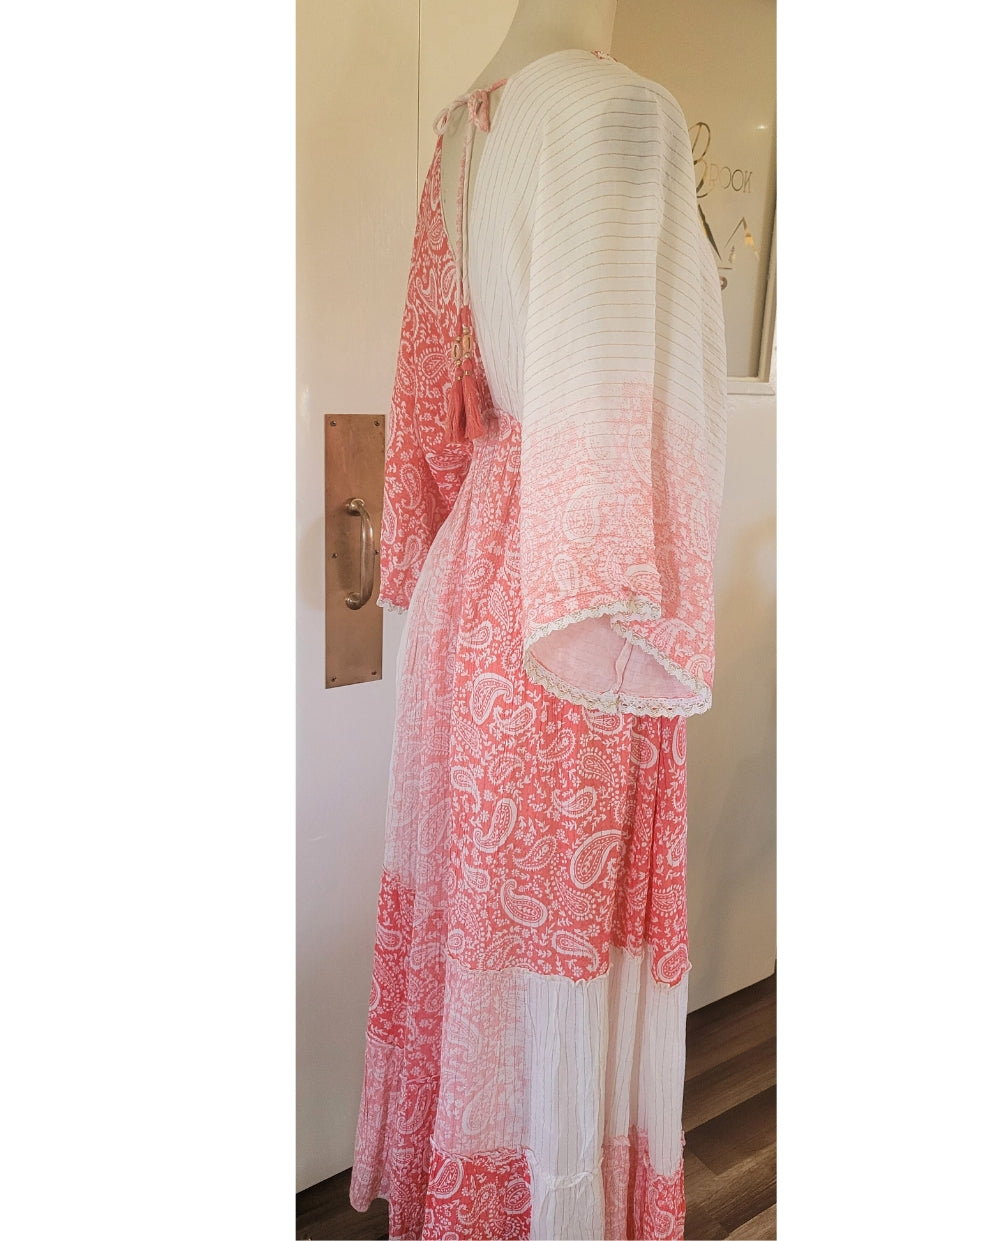 Elegant Sari Dress in Coral